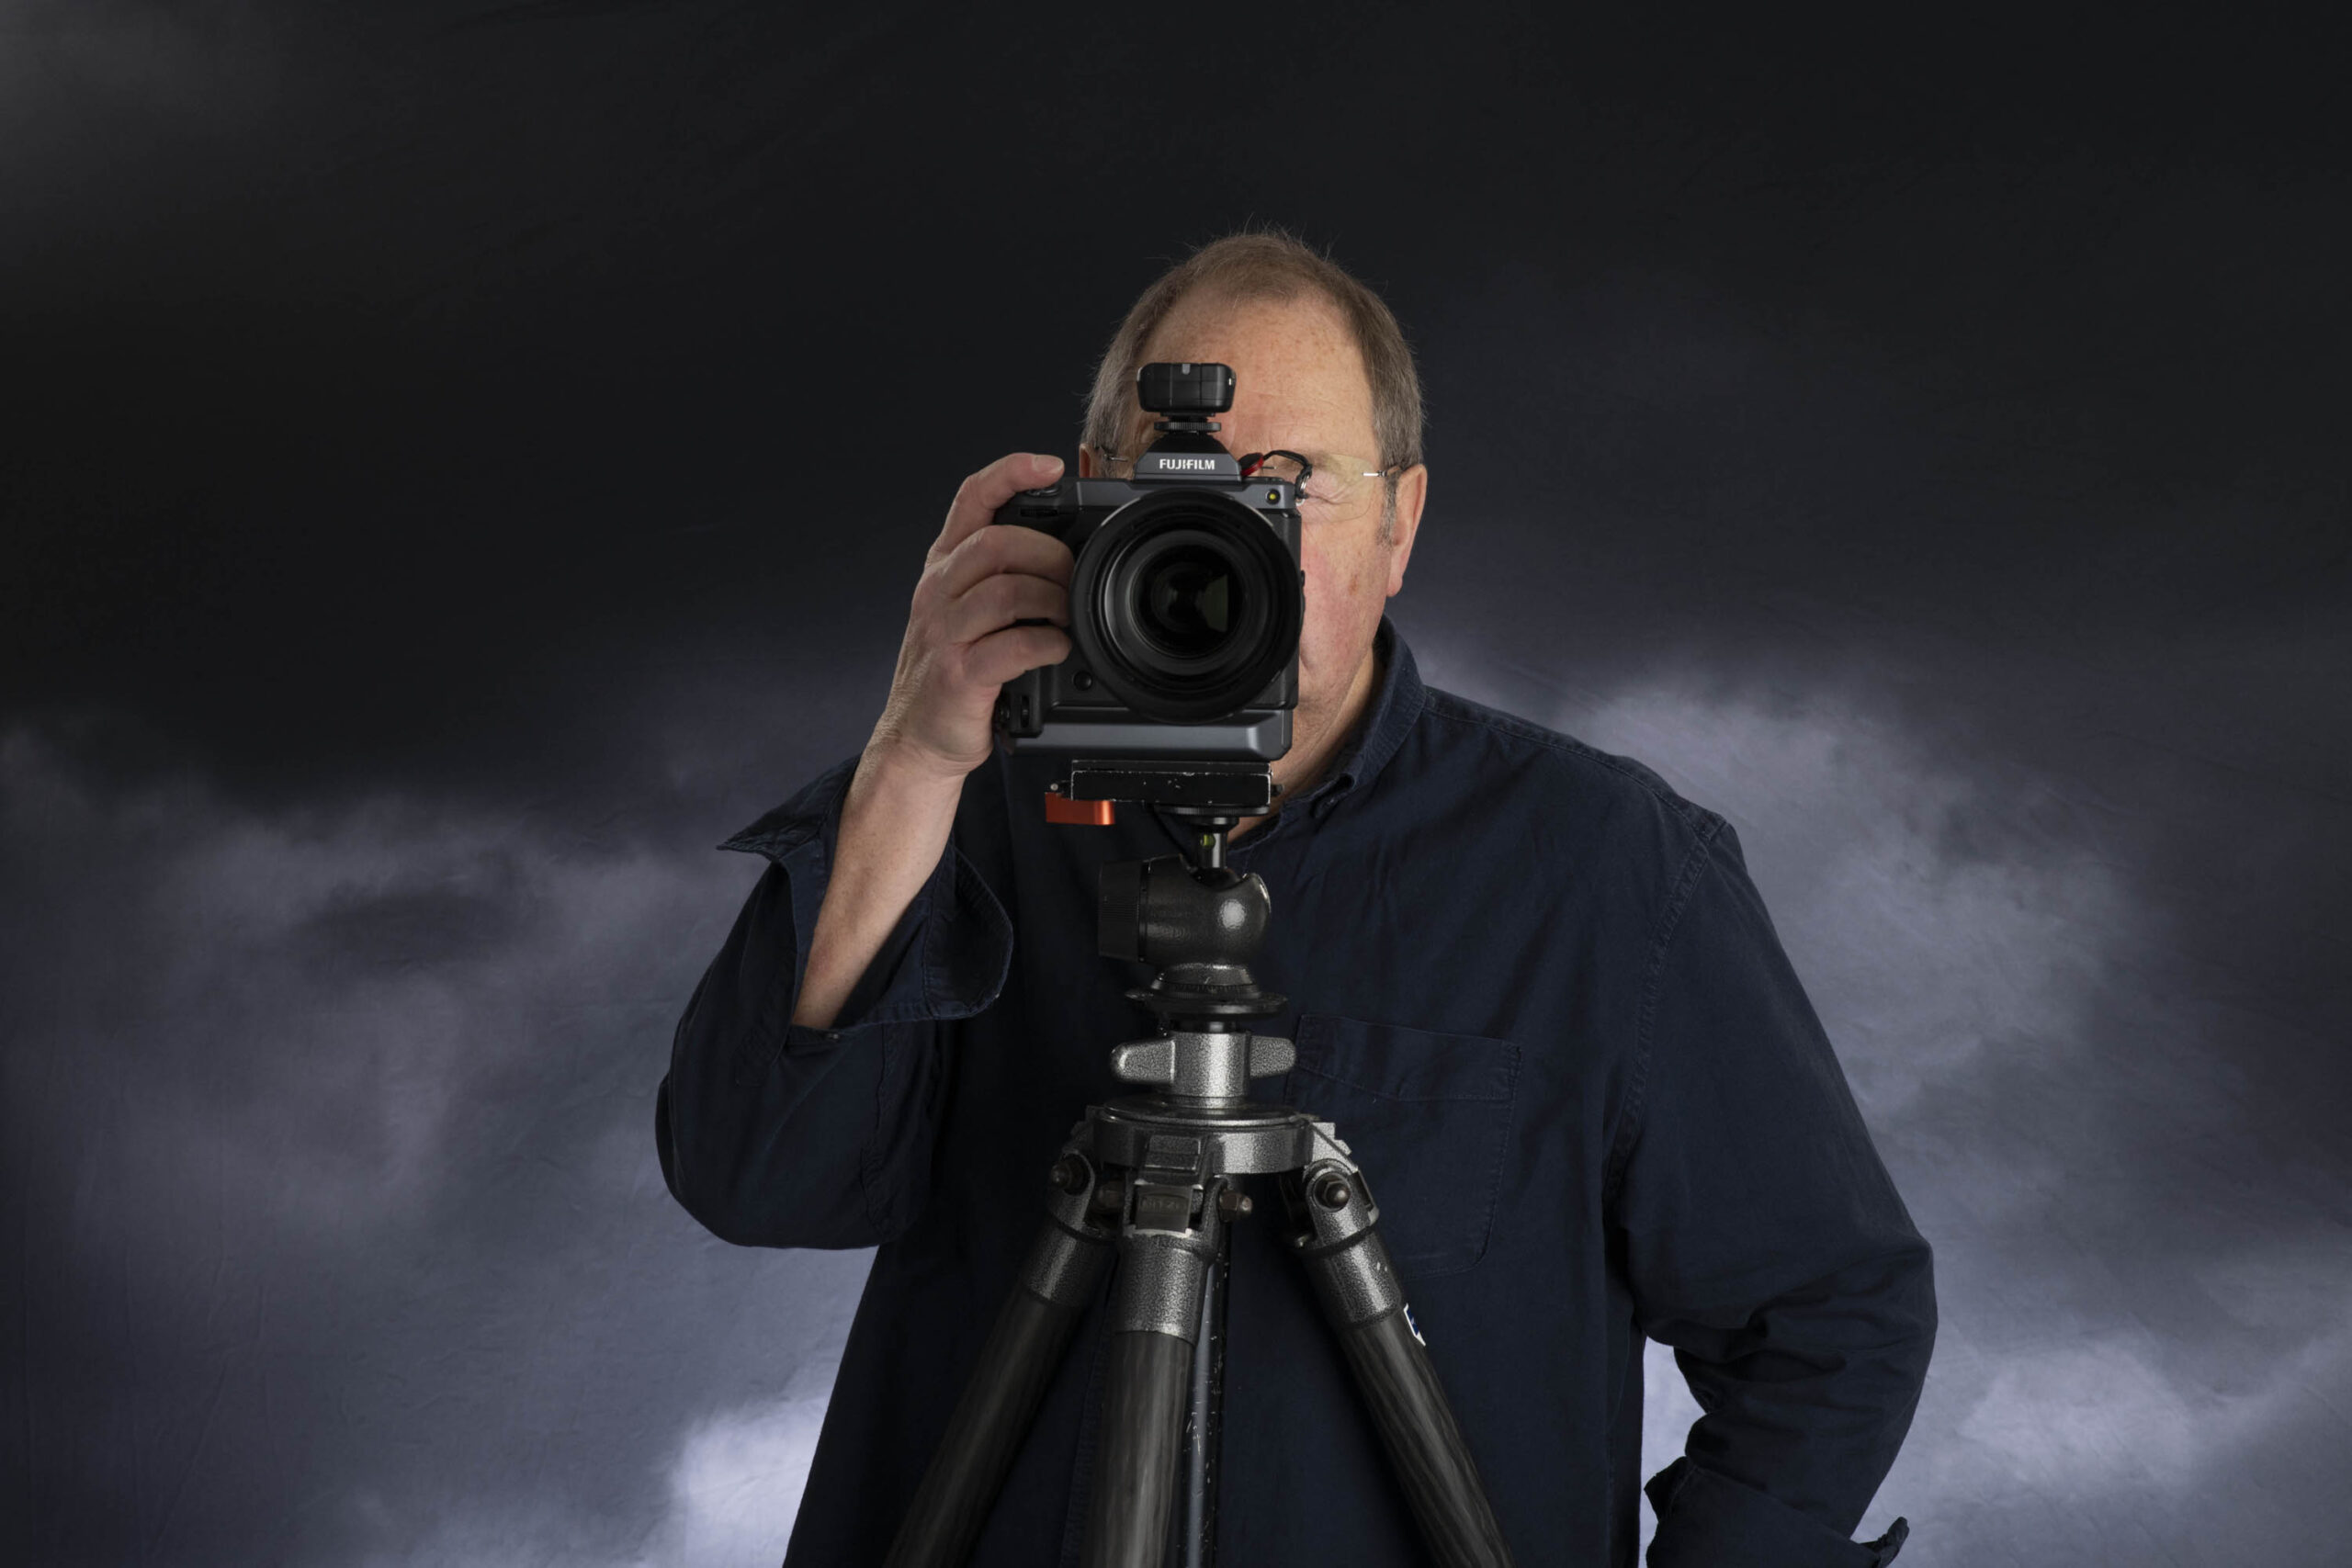 Lorentz Gullachsen hidden behind camera with Stormy sky background